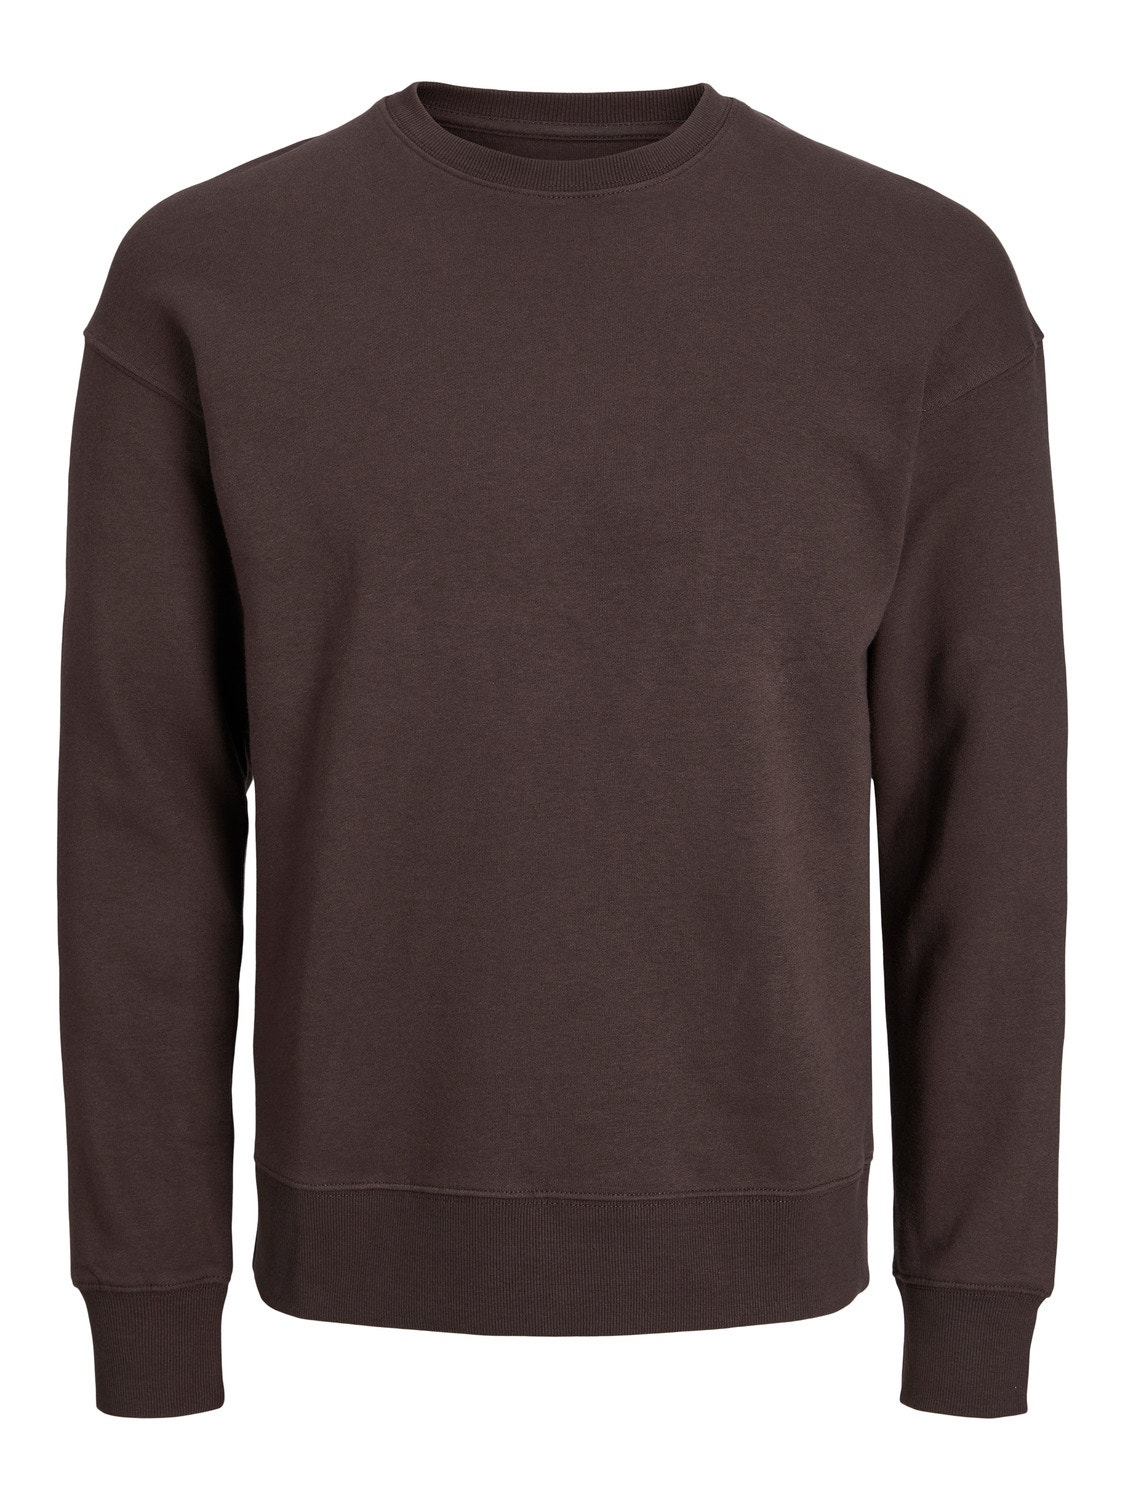 Jack & Jones Plain Crewn Neck Sweatshirt -Seal Brown - 12208182